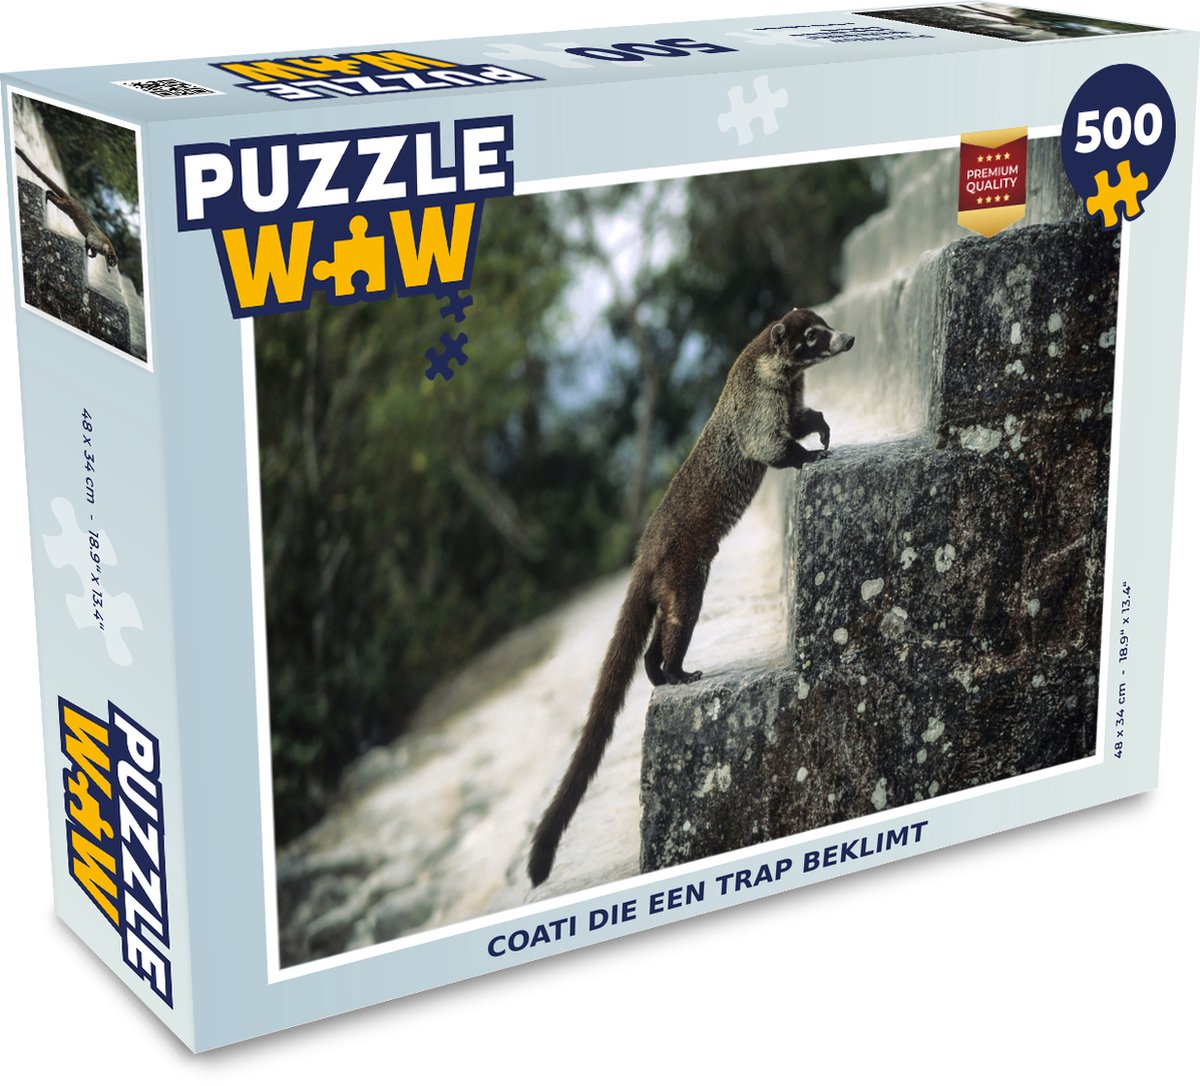 Afbeelding van product Puzzel 500 stukjes Coati's - Coati die een trap beklimt - PuzzleWow heeft +100000 puzzels